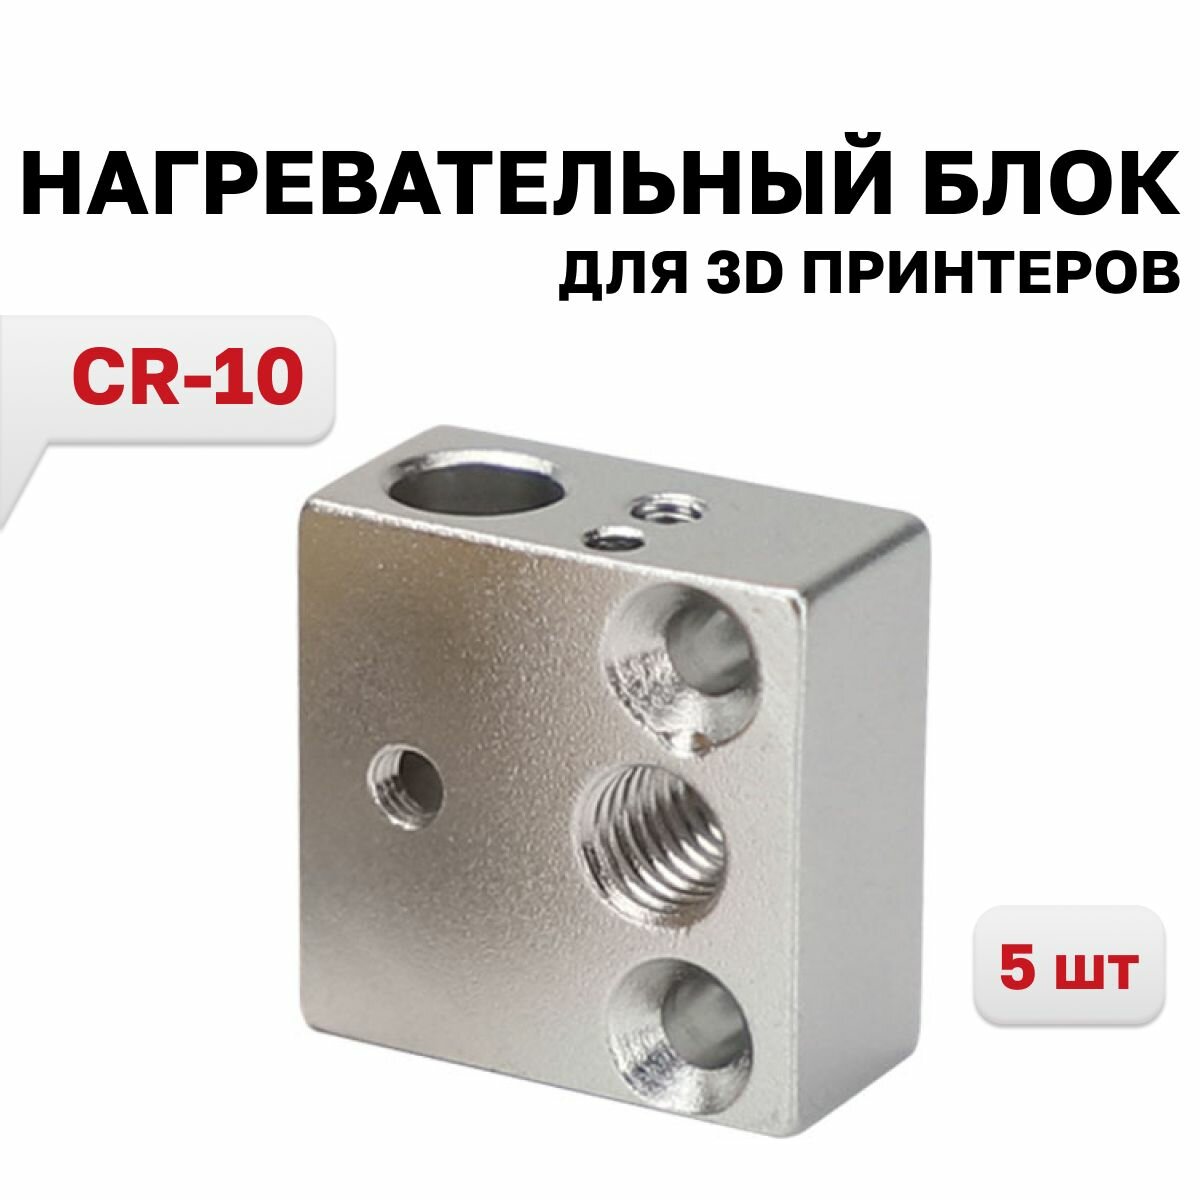 Нагревательный блок CR-10 алюминиевый, 5 шт.